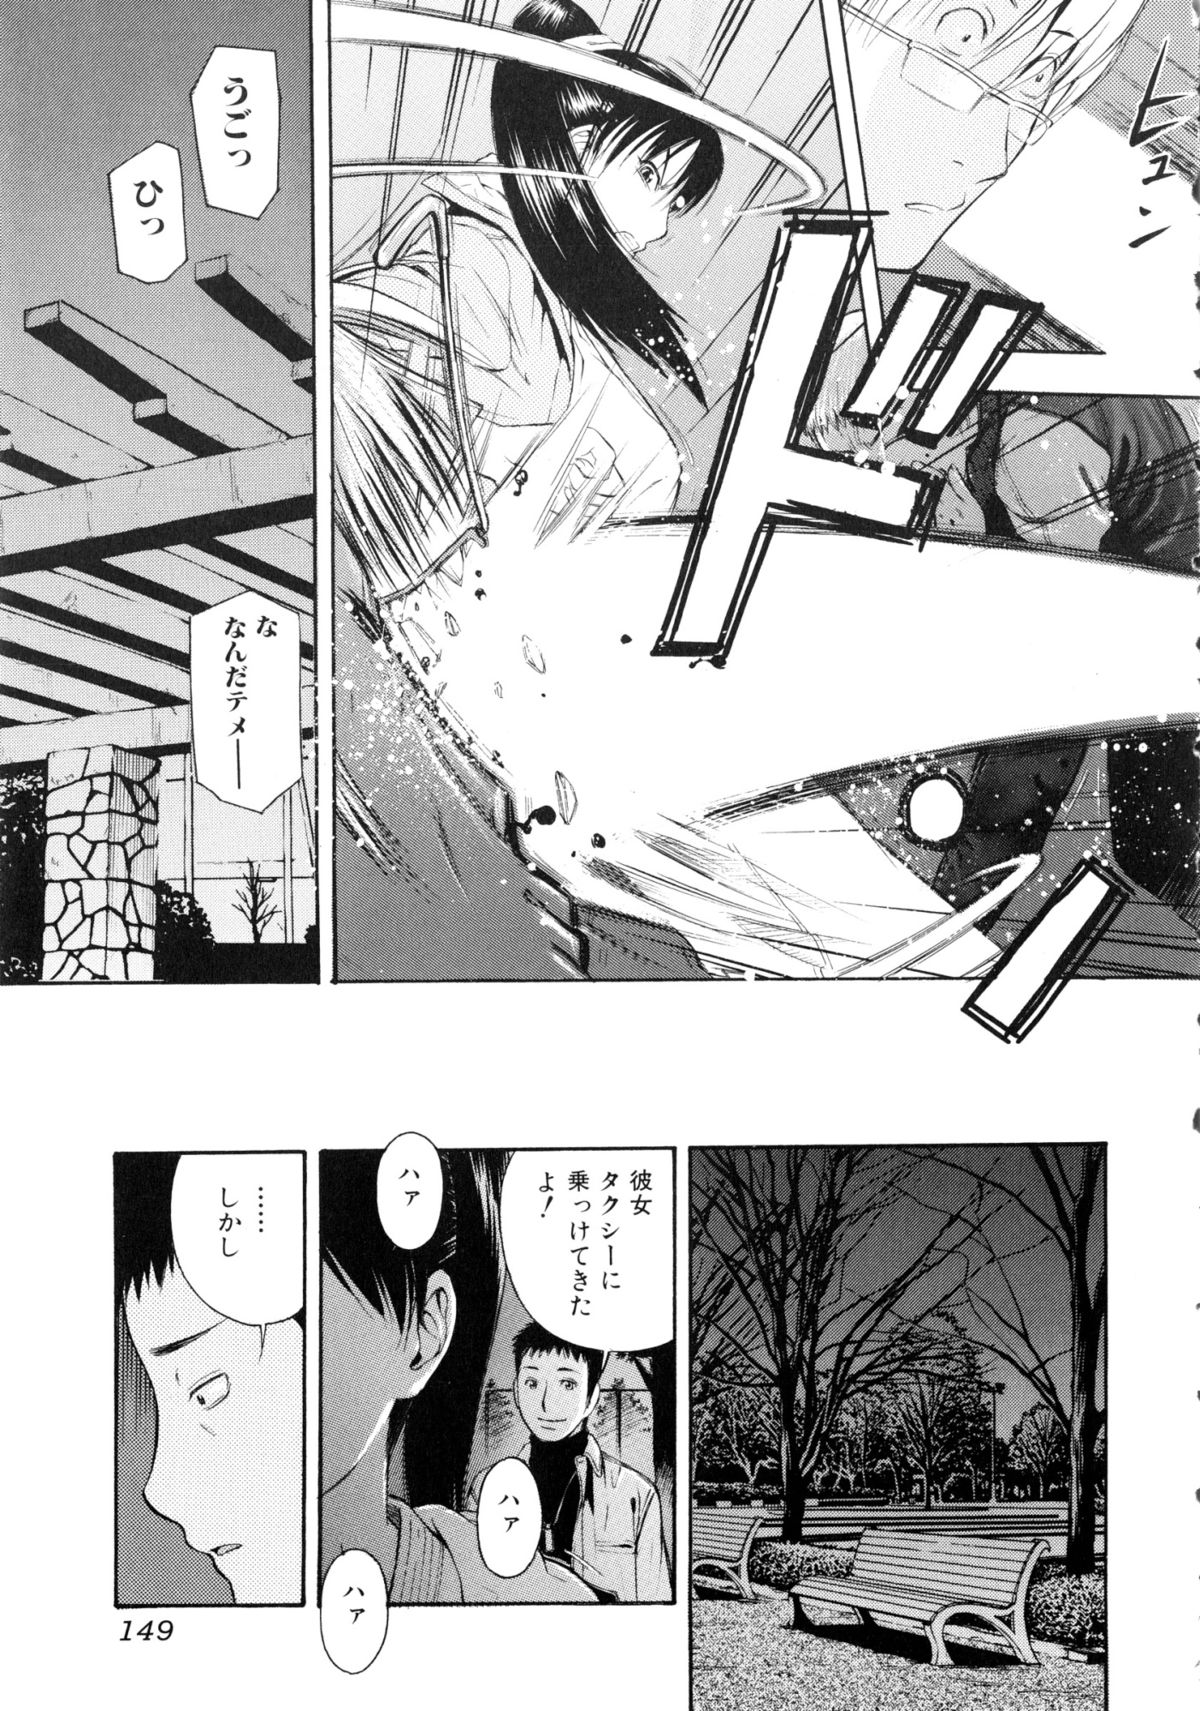 [アンソロジー] 闘姫H (いずみコミックス225)